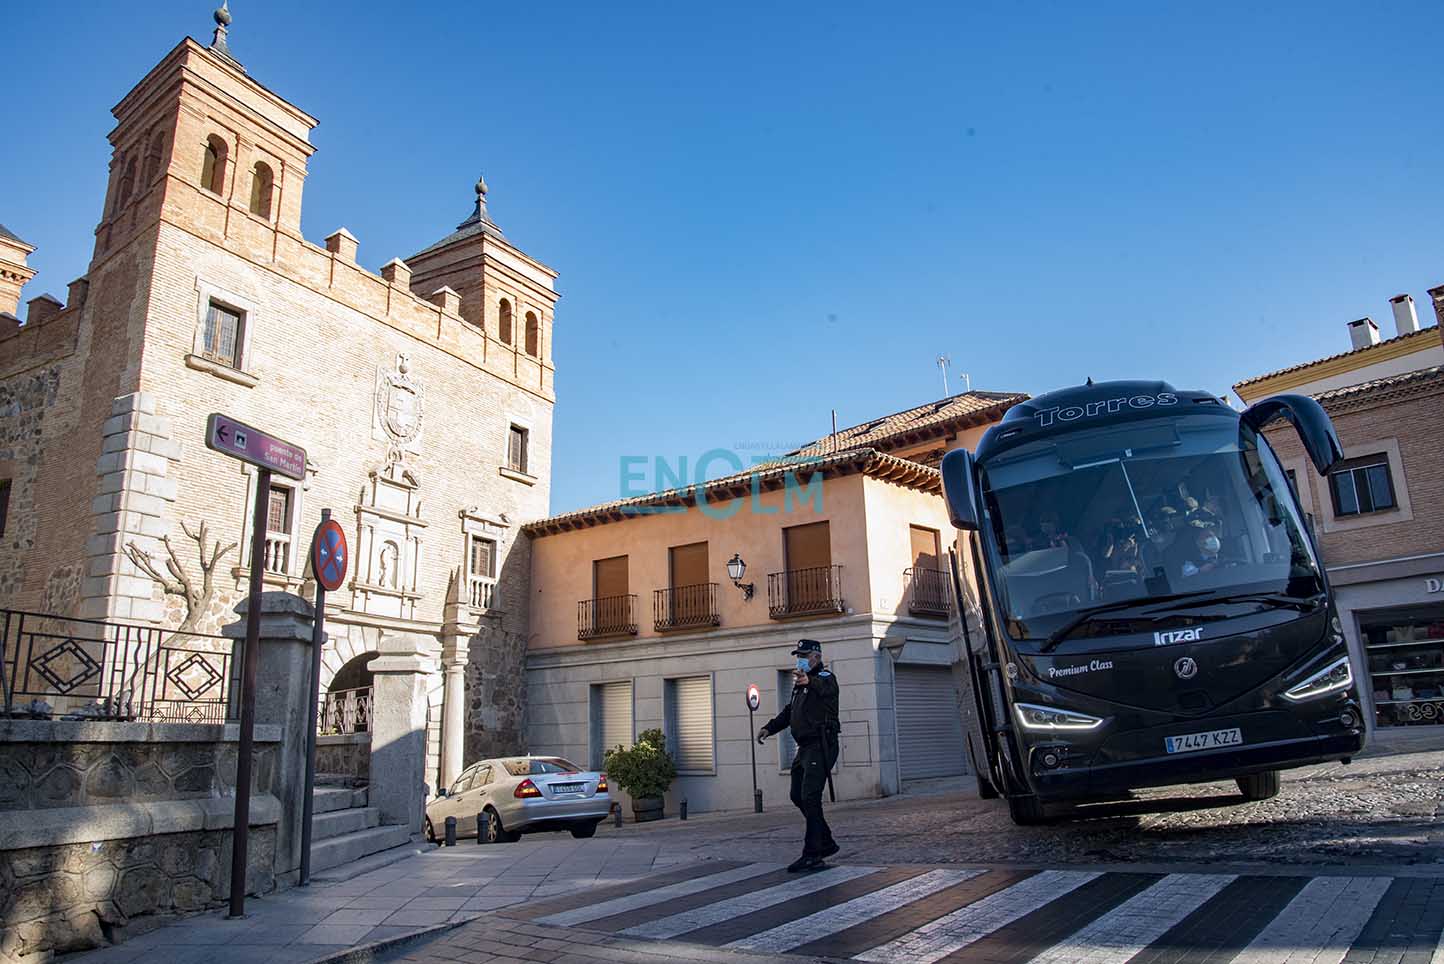 El autobús ha maniobrado frente a la Puerta del Cambrón para poder dar la vuelta. Fotografía: Rebeca Arango.